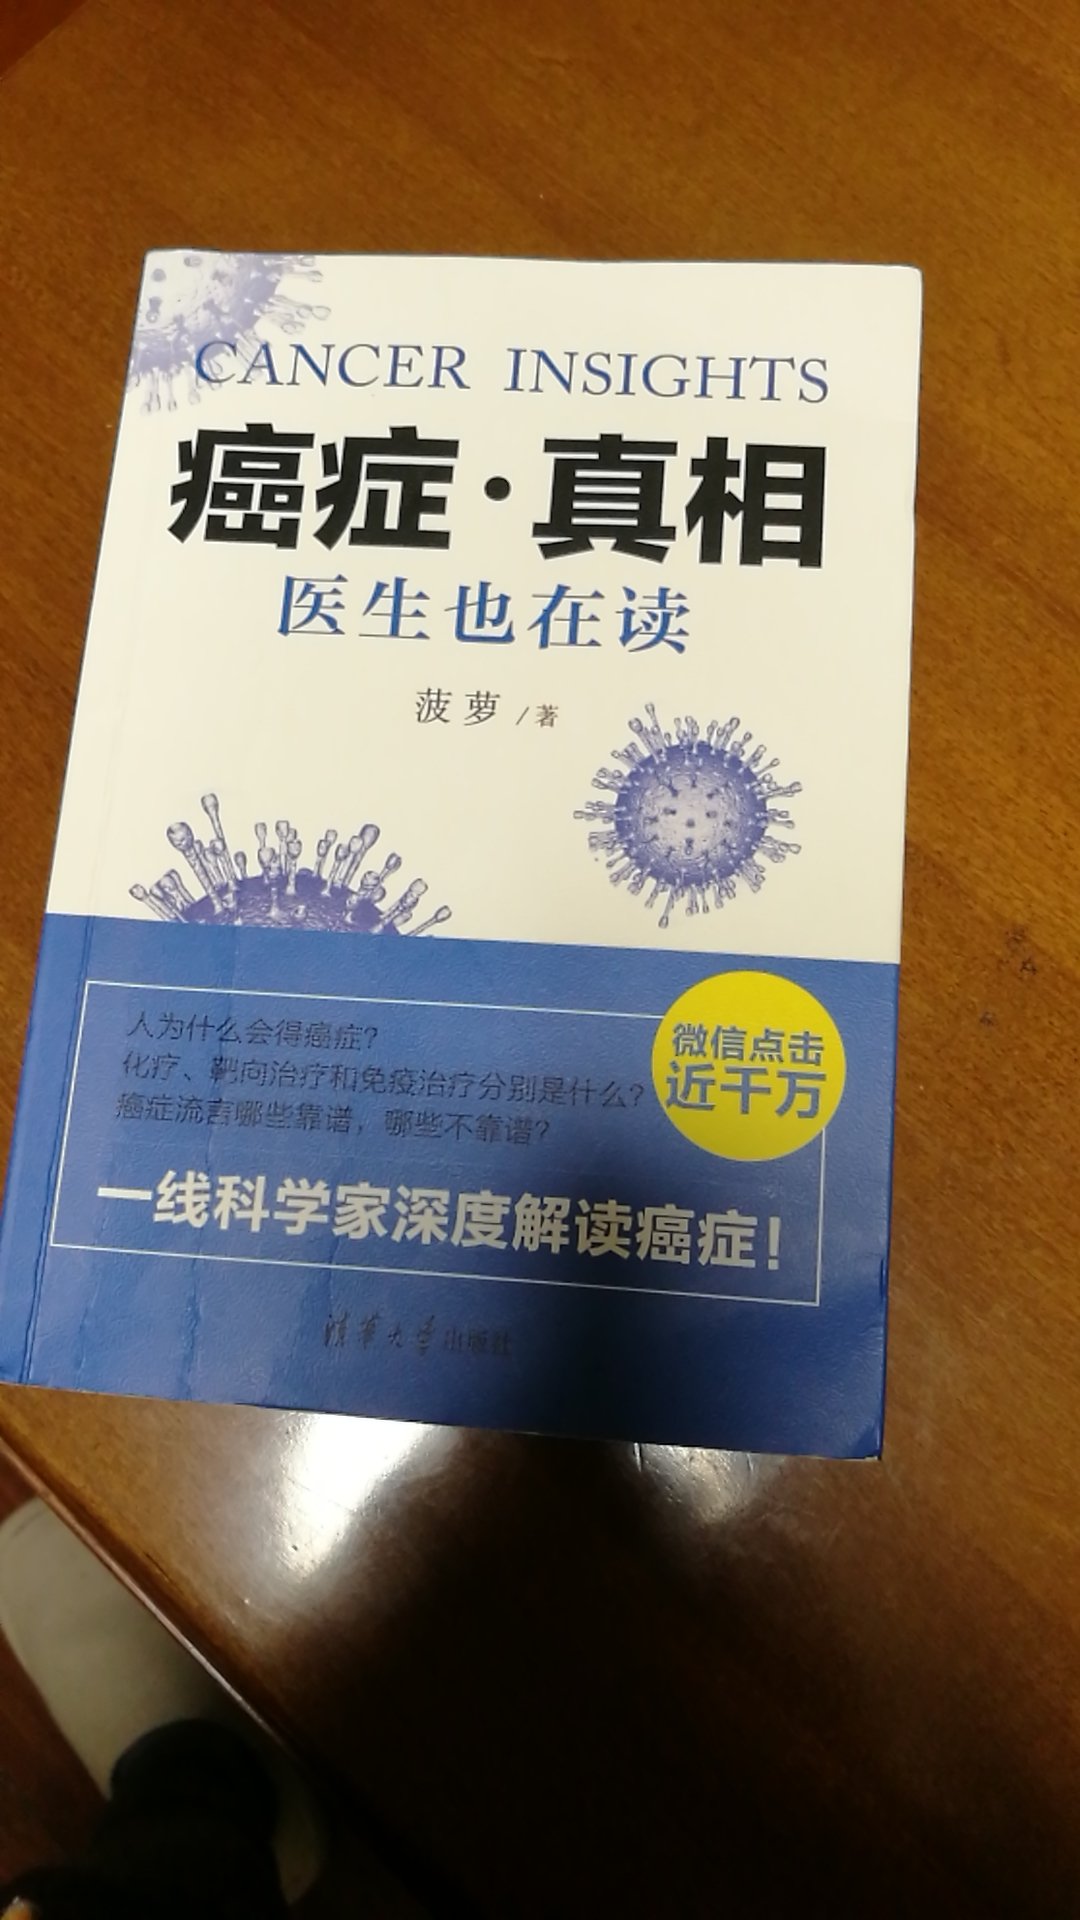 因为父亲生病了，经同事推荐买来此书，了解了很多相关知识。书籍不错。